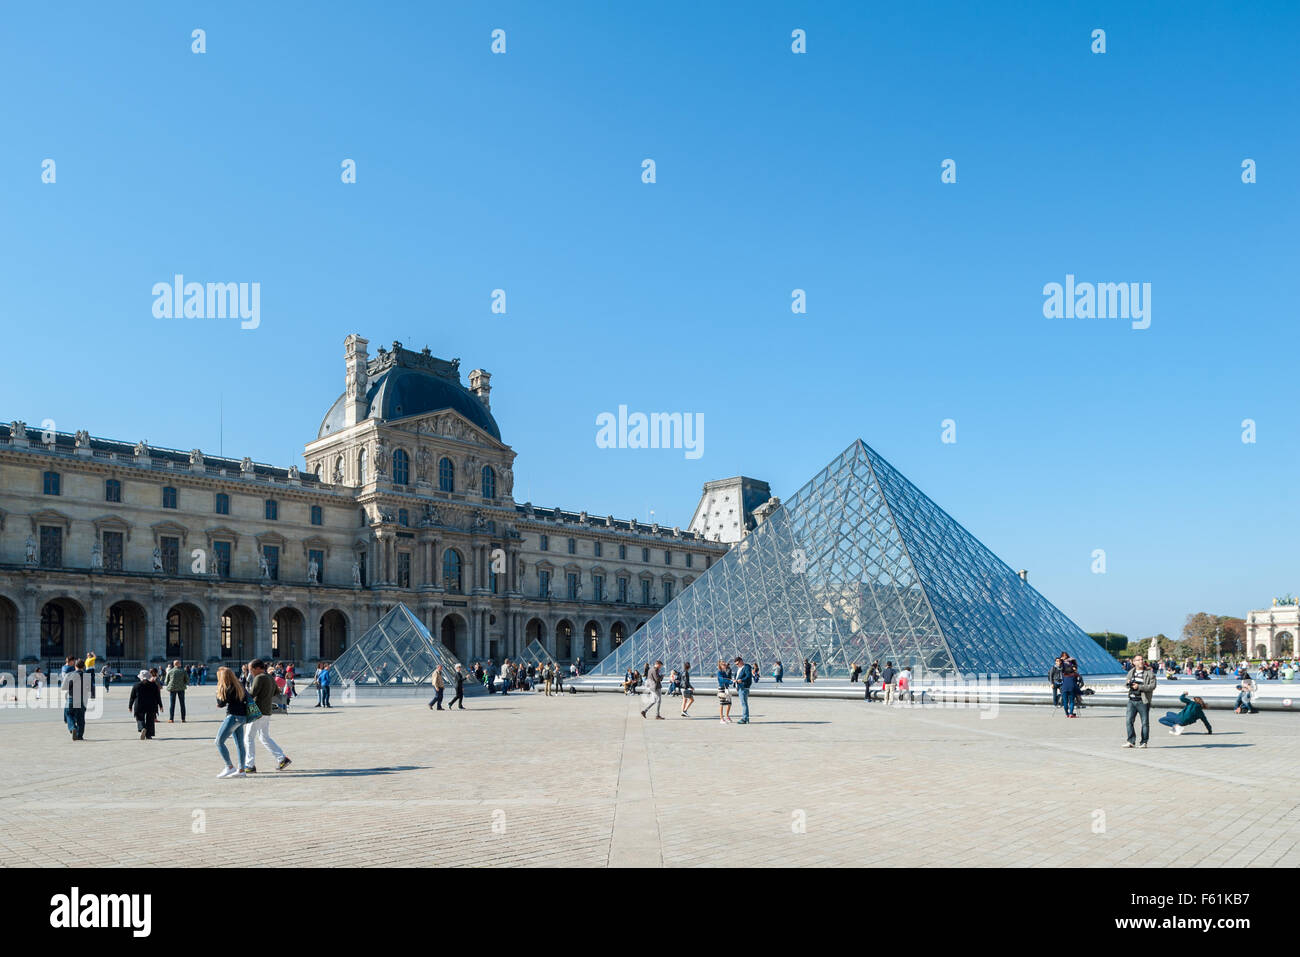 Frankreich, Paris, Louvre-Pyramide - Cour Napoleon Stockfoto